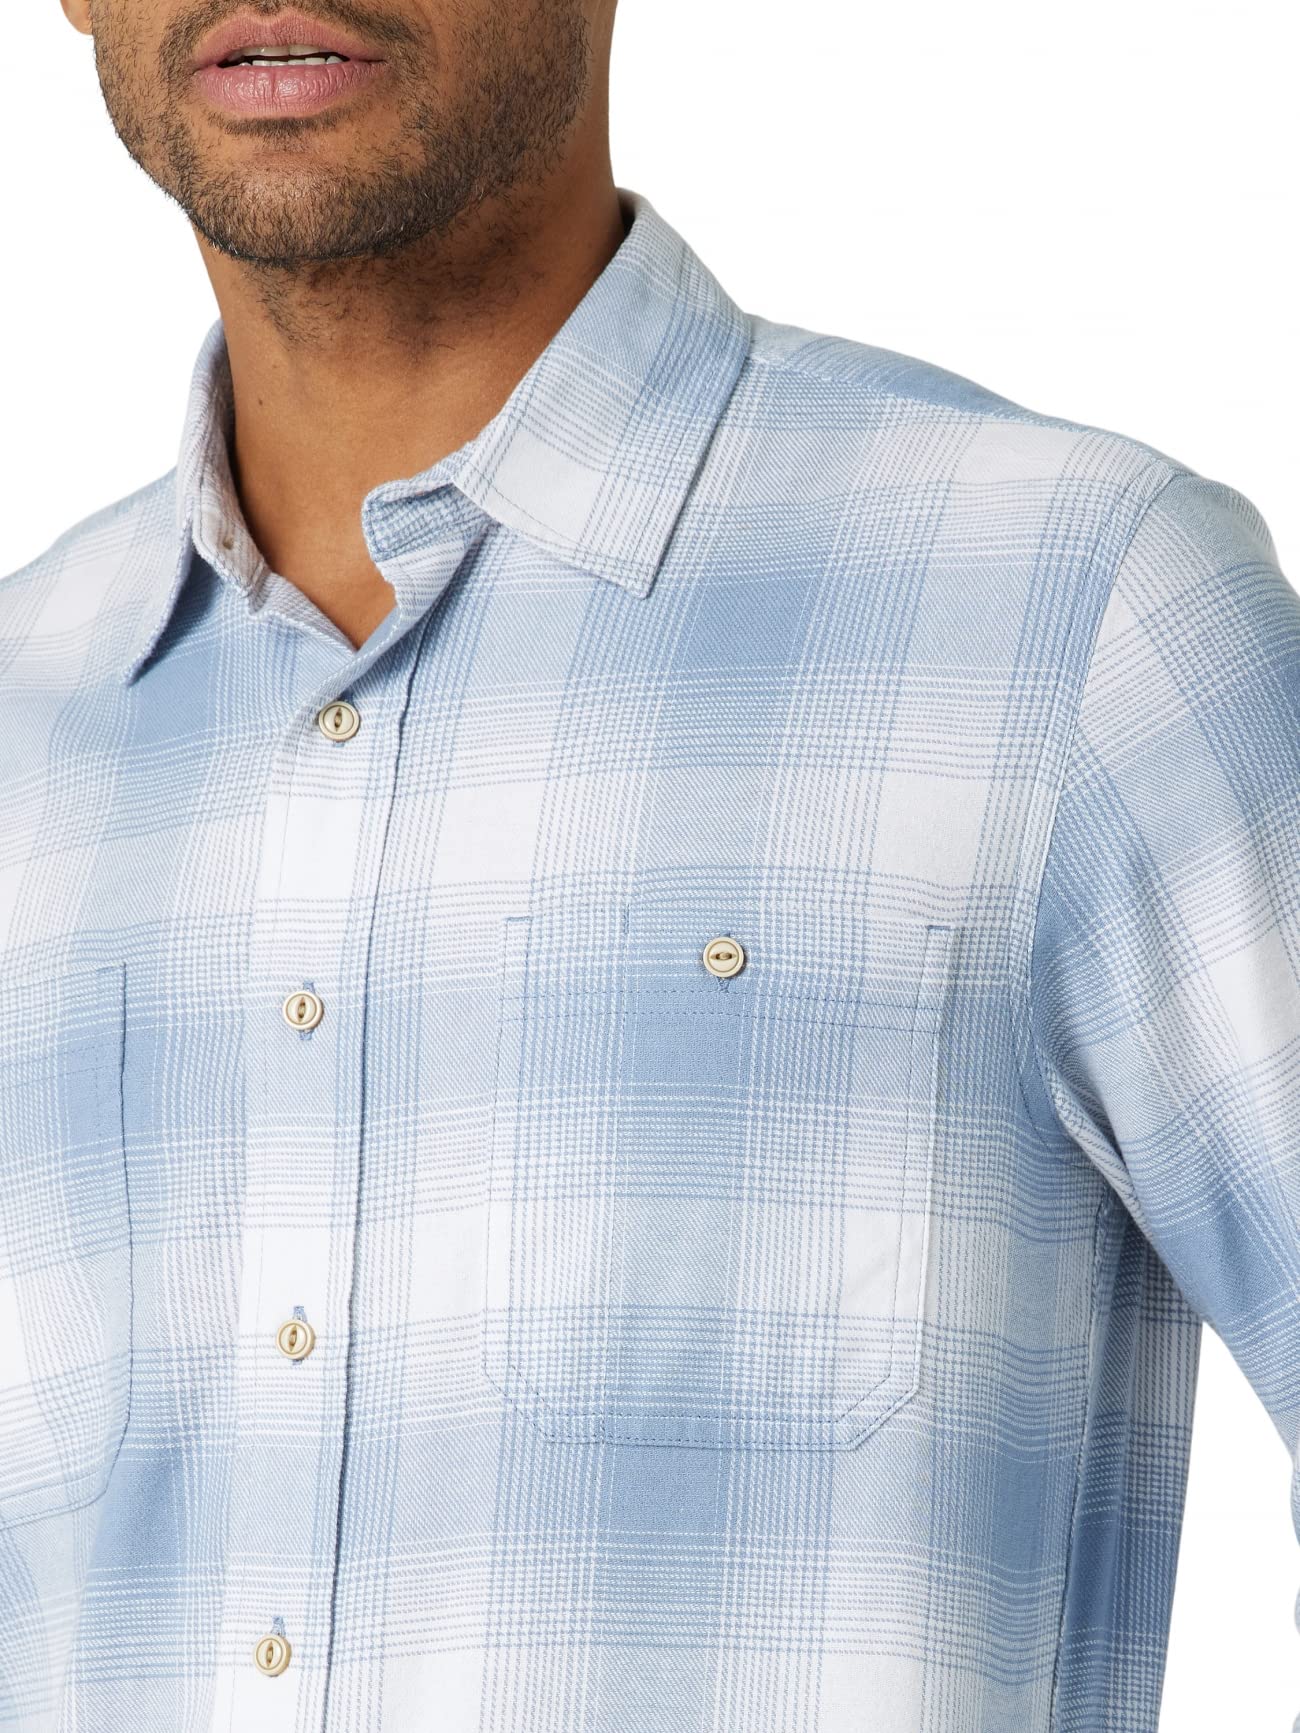 Wrangler Authentics Men's Cloud Flannel Woven Shirt